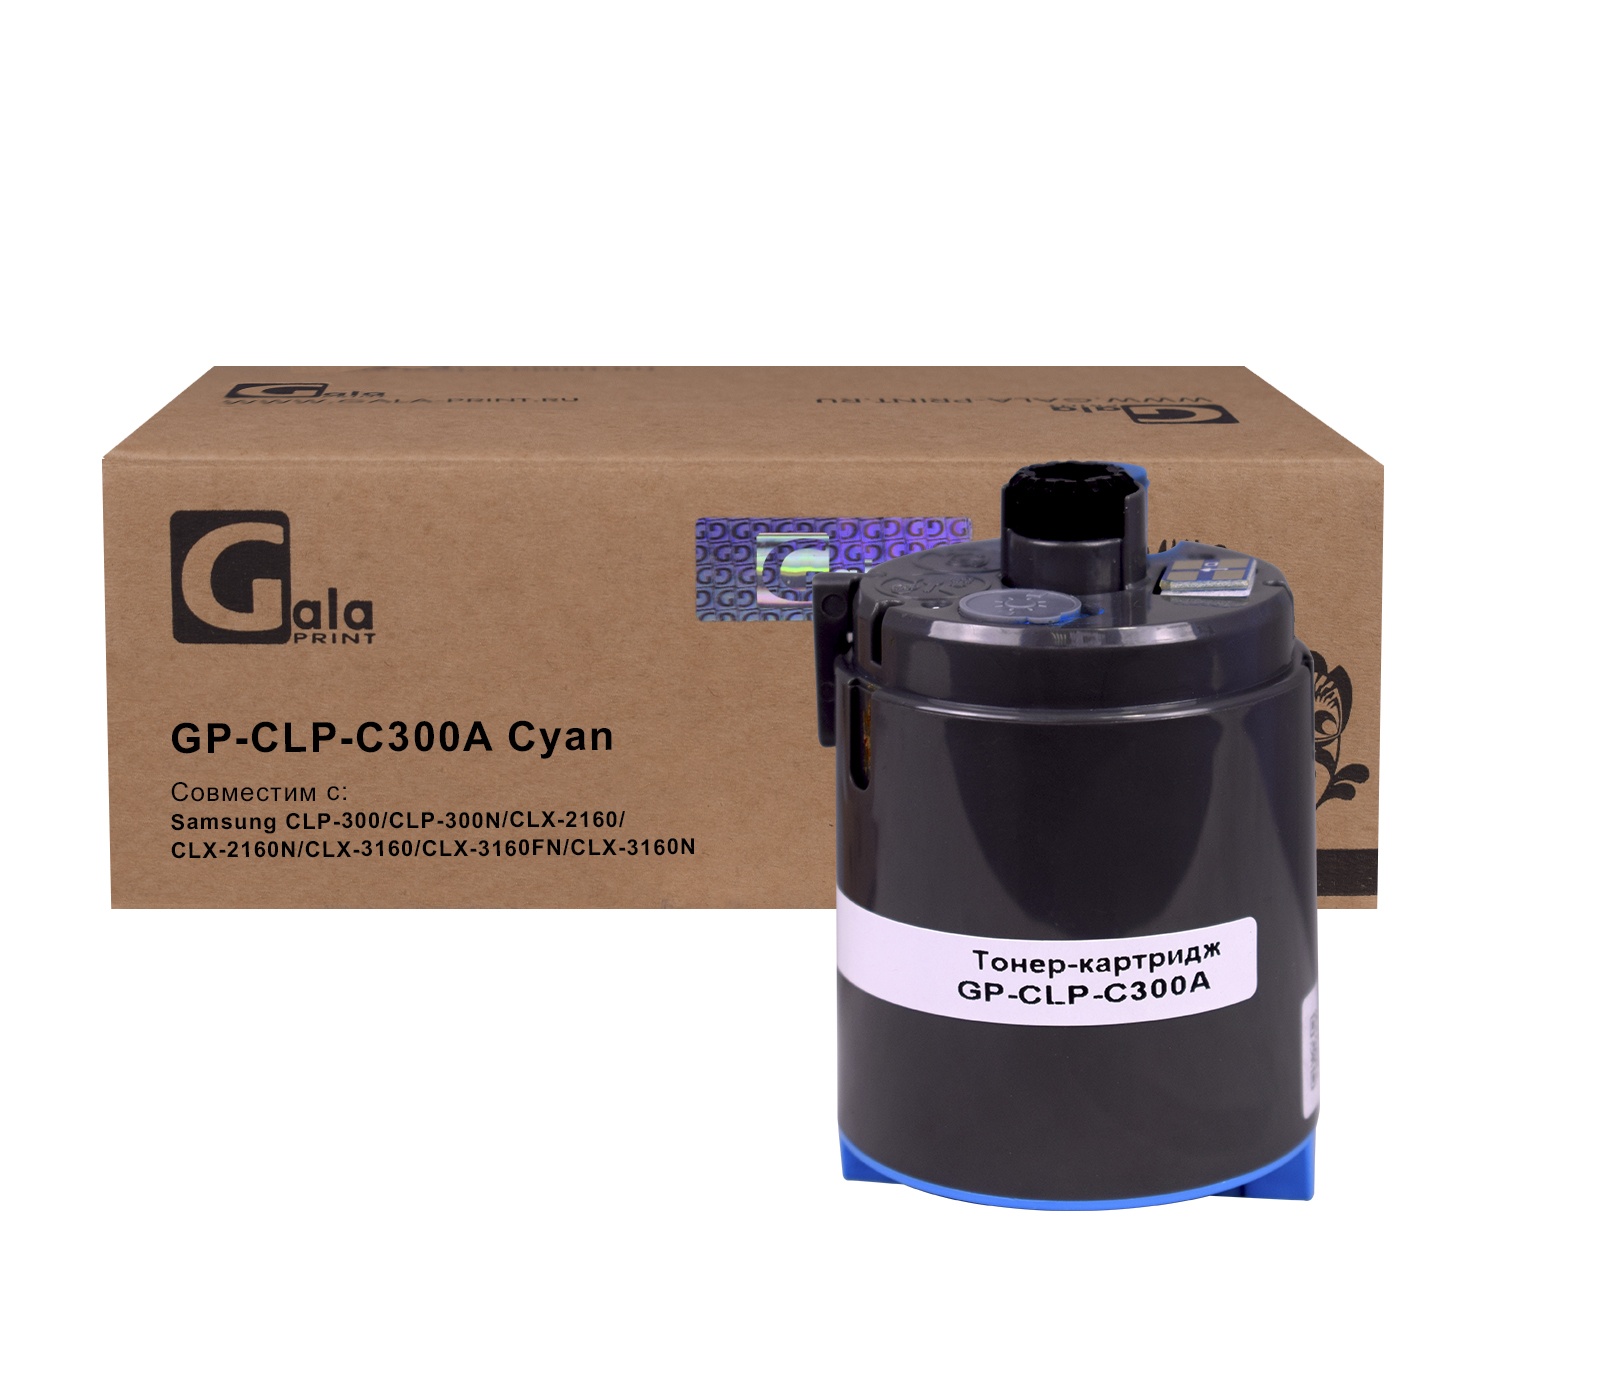 Картридж GP-CLP-C300A для принтеров Samsung CLP-300/CLP-300N/CLX-2160/CLX-2160N/CLX-3160/CLX-3160FN/CLX-3160N Cyan 1000 копий GalaPrint